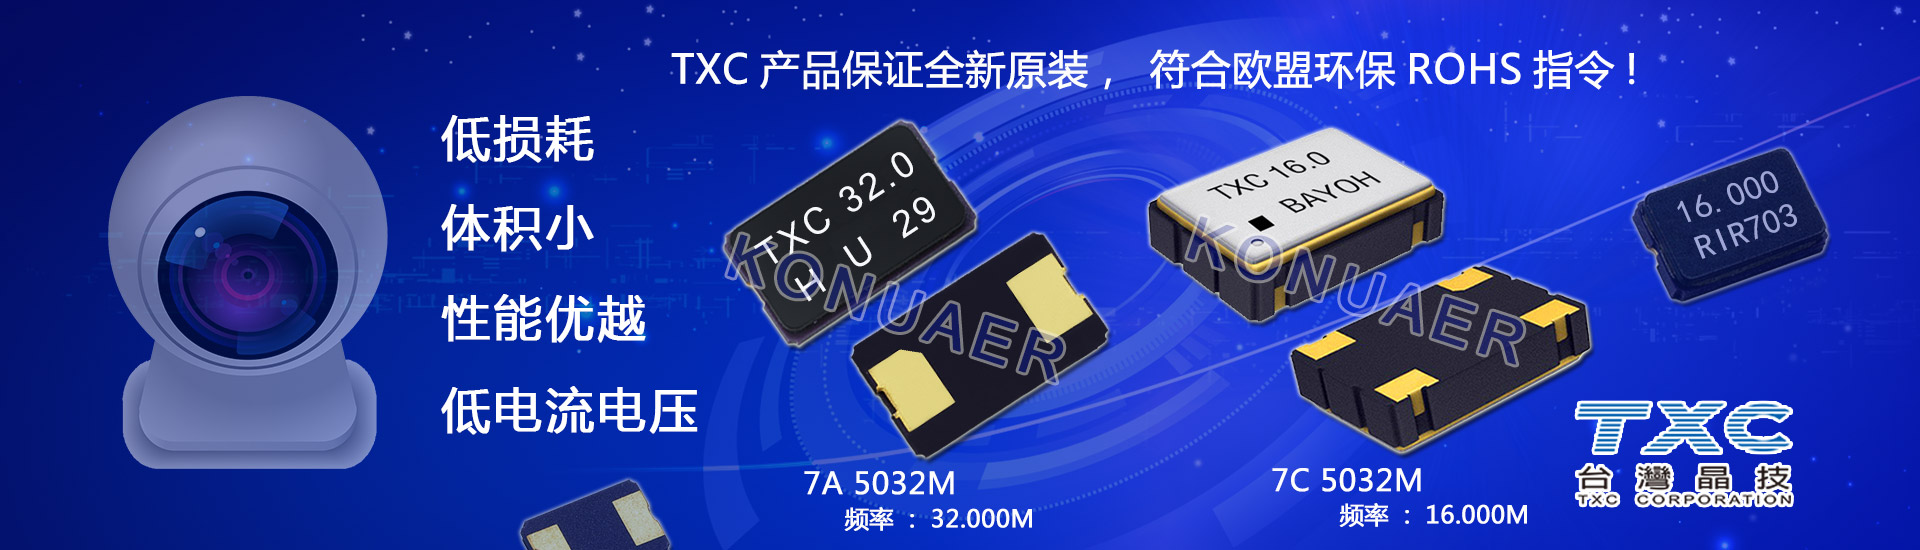 TXC晶振晶体小型高精密,康华尔电子代理提供,各种封装尺寸一应俱全